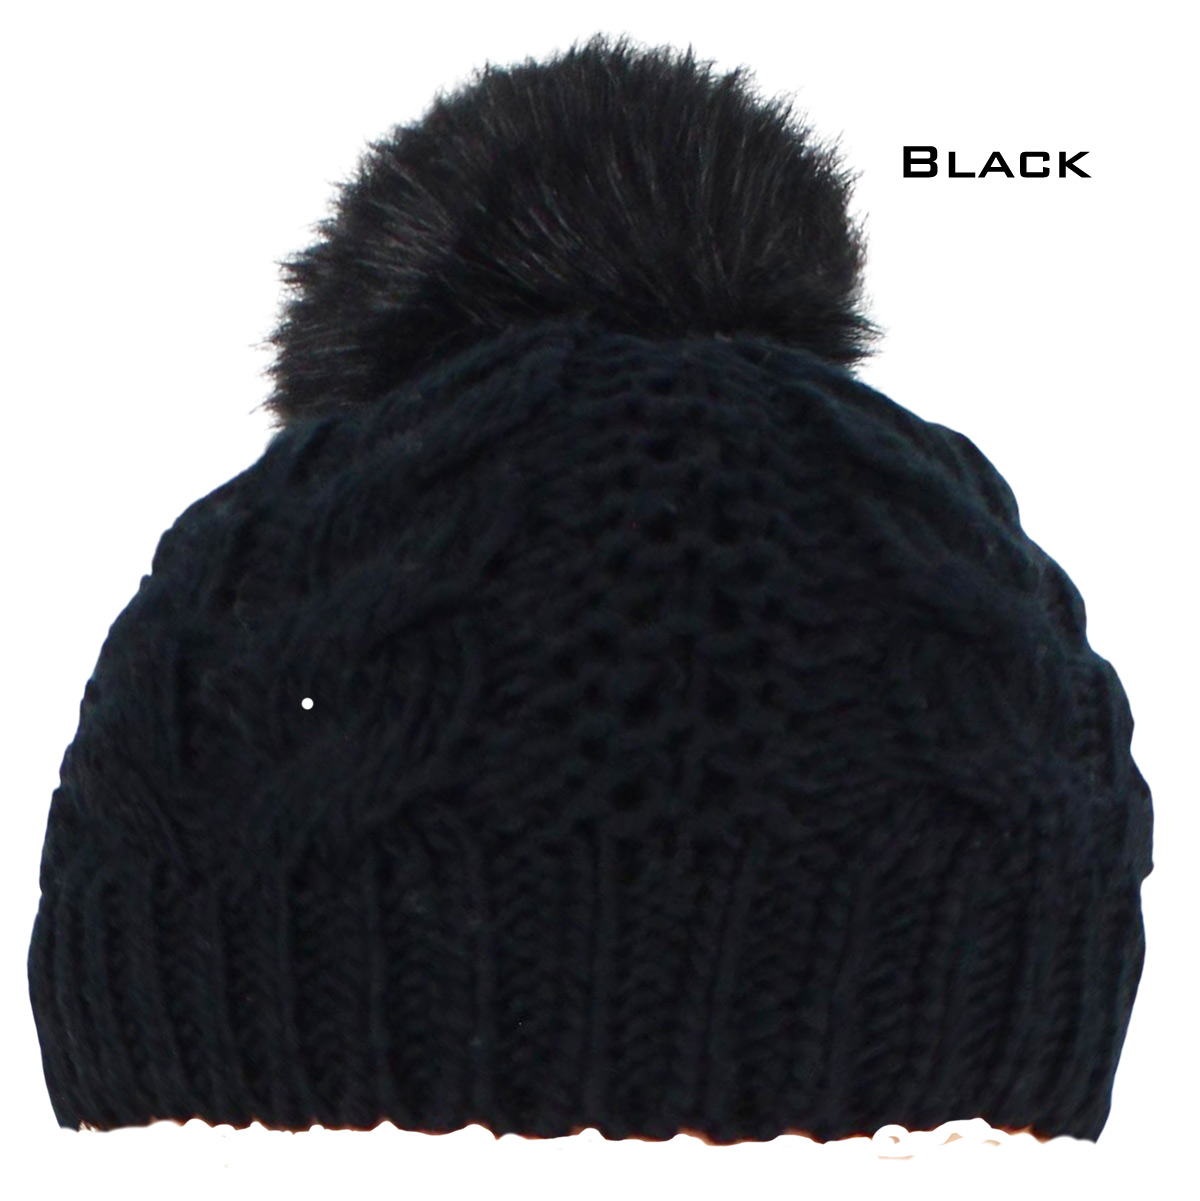 3114 - Winter Knit Hats 10027 LIGHT PINK/YARN POM POM Knit Winter Hat - One Size Fits Most